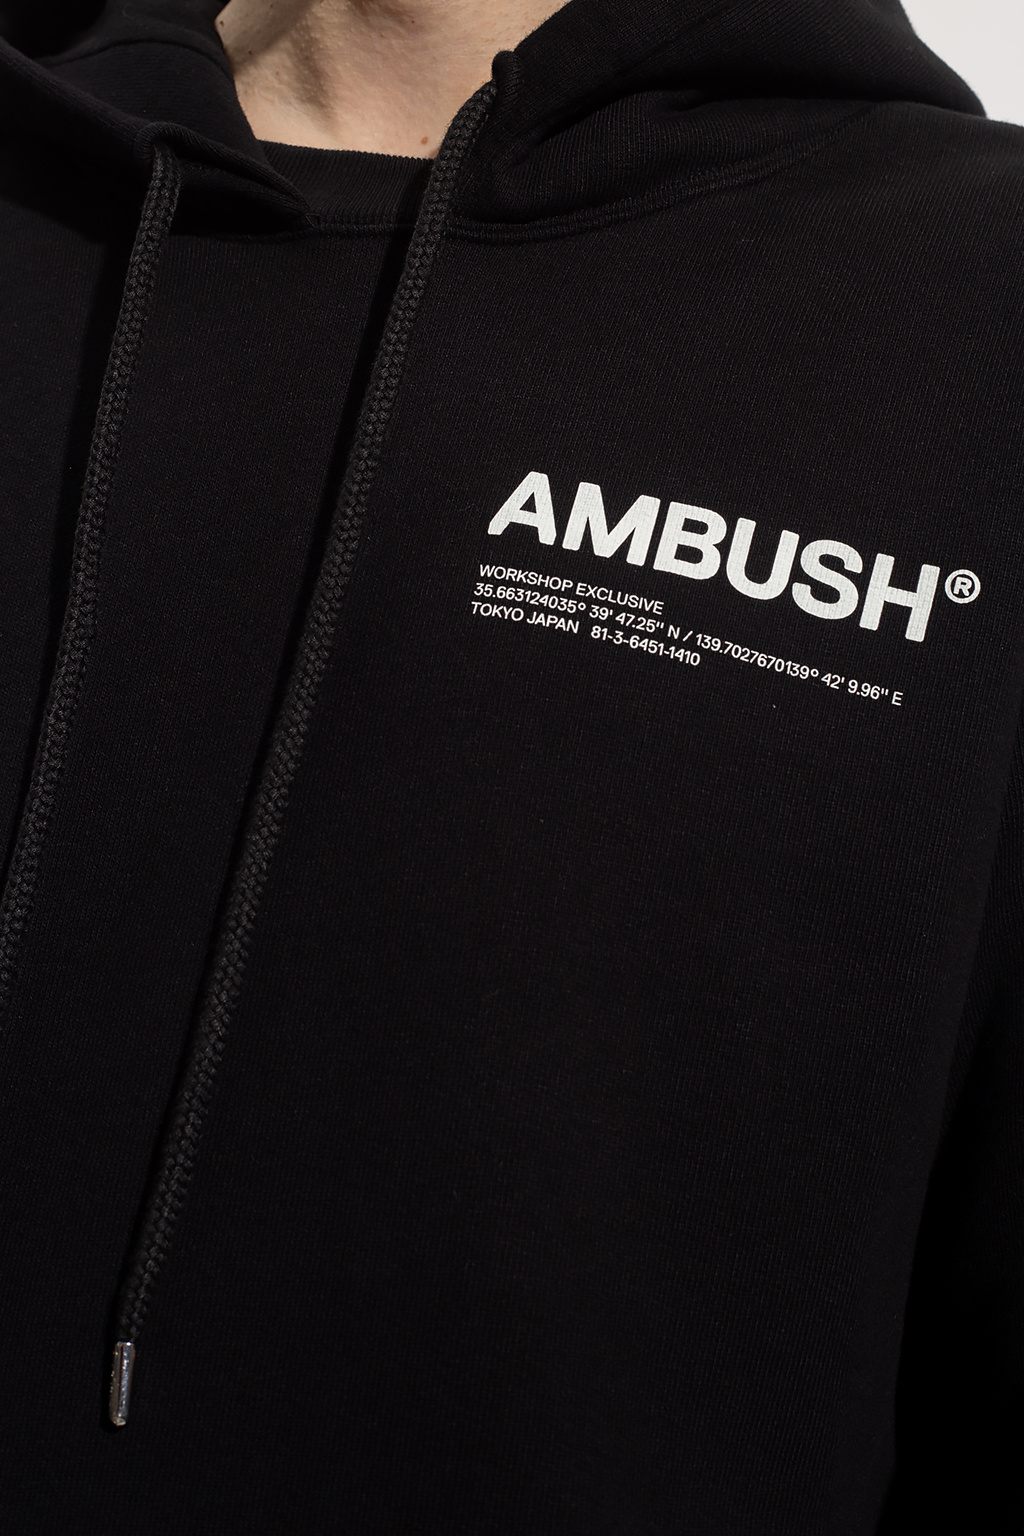 Ambush Logo-printed hoodie